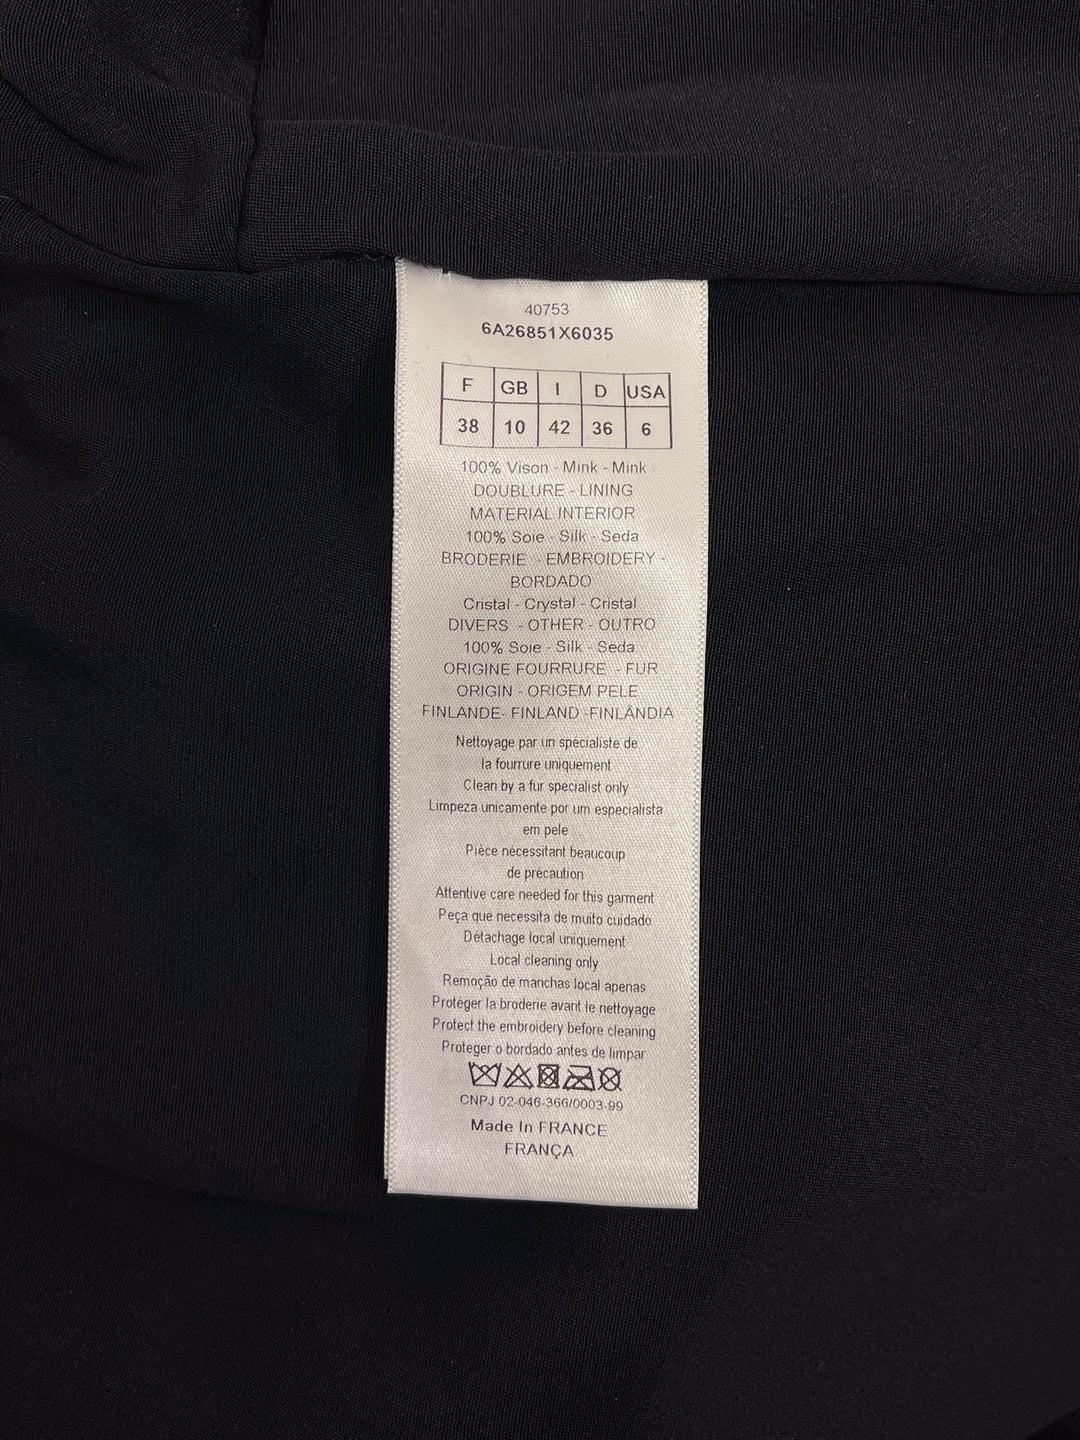 Noir Christian Dior - Manteau noir en vison en vente